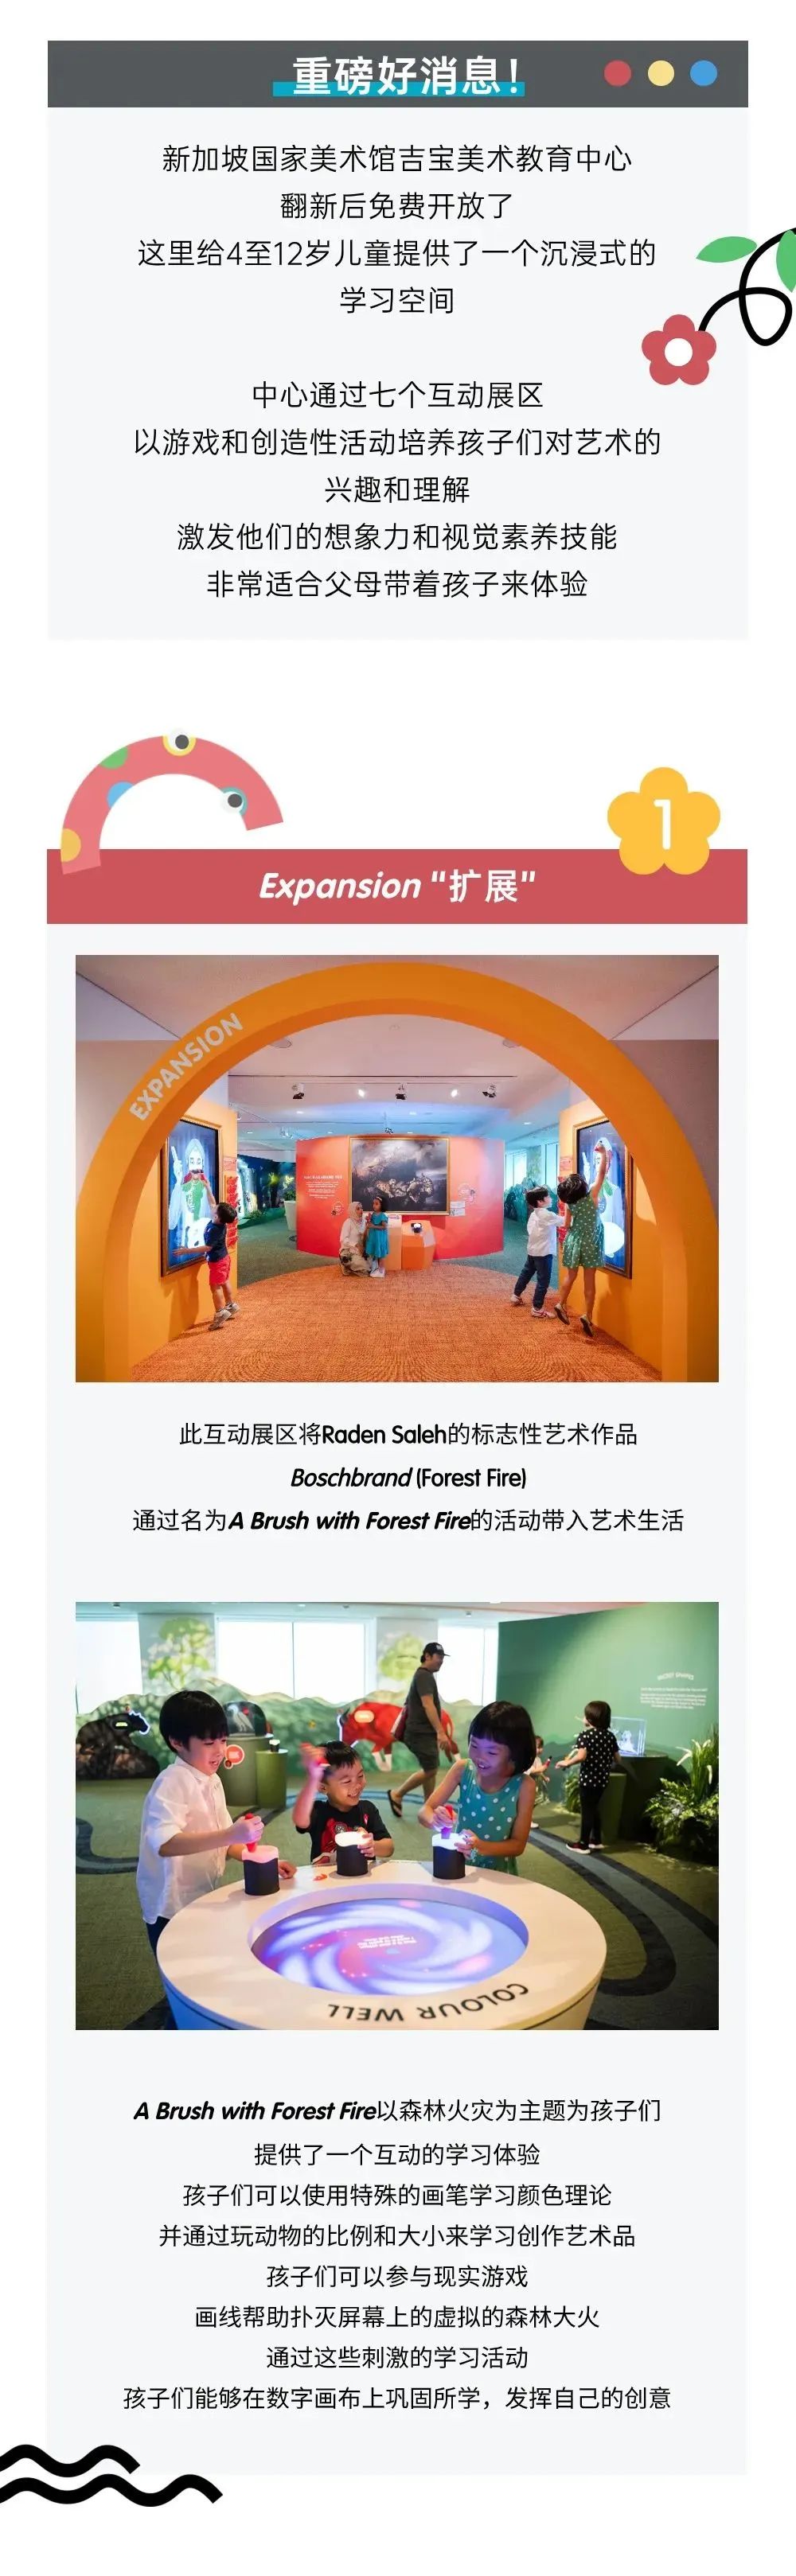 免费入场！新加坡国家美术馆吉宝美术教育中心再次开放！